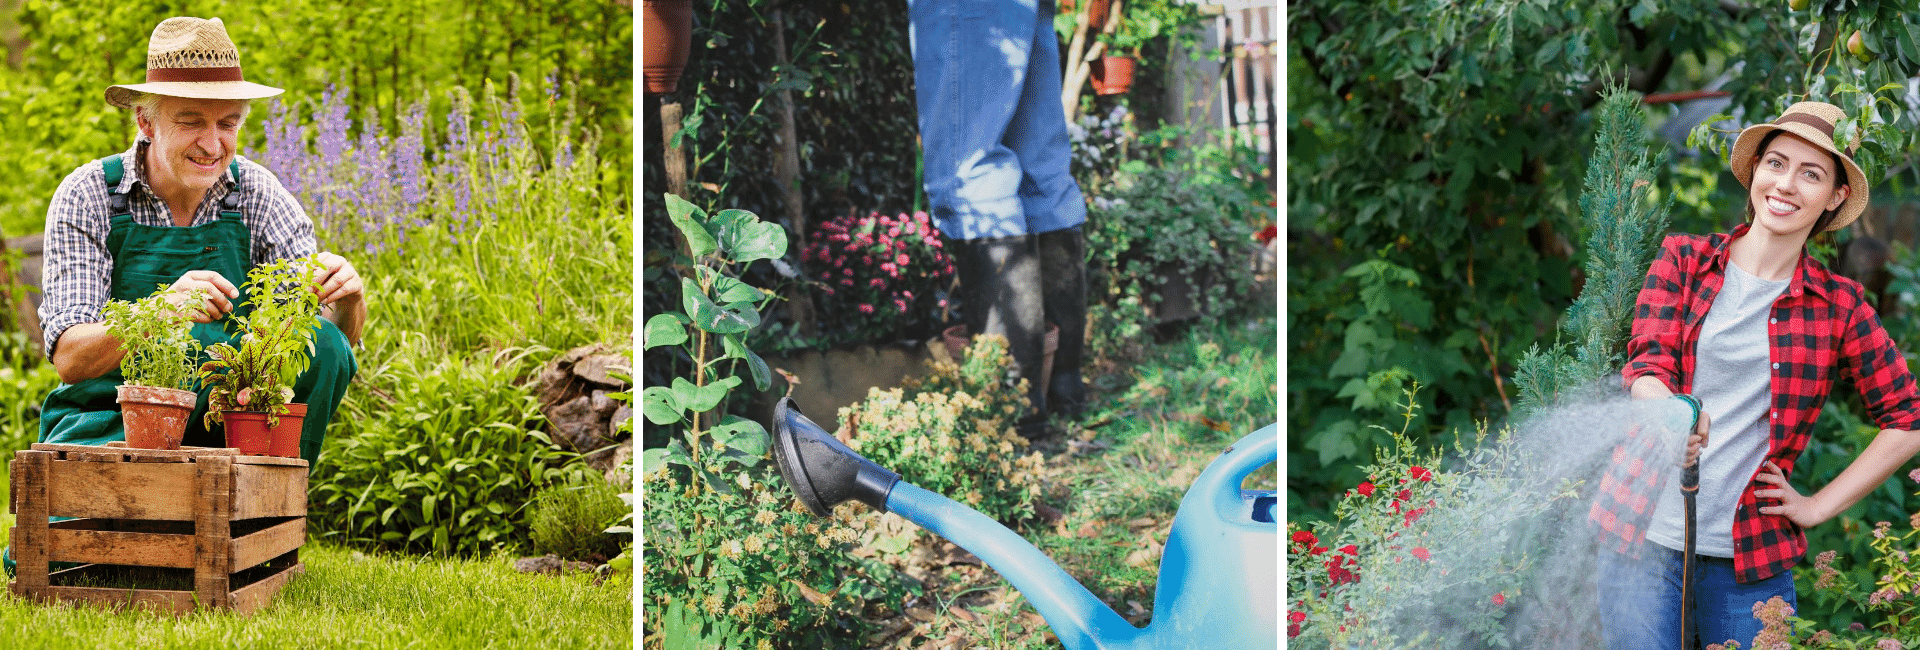 Réduire les ravages des limaces dans le jardin